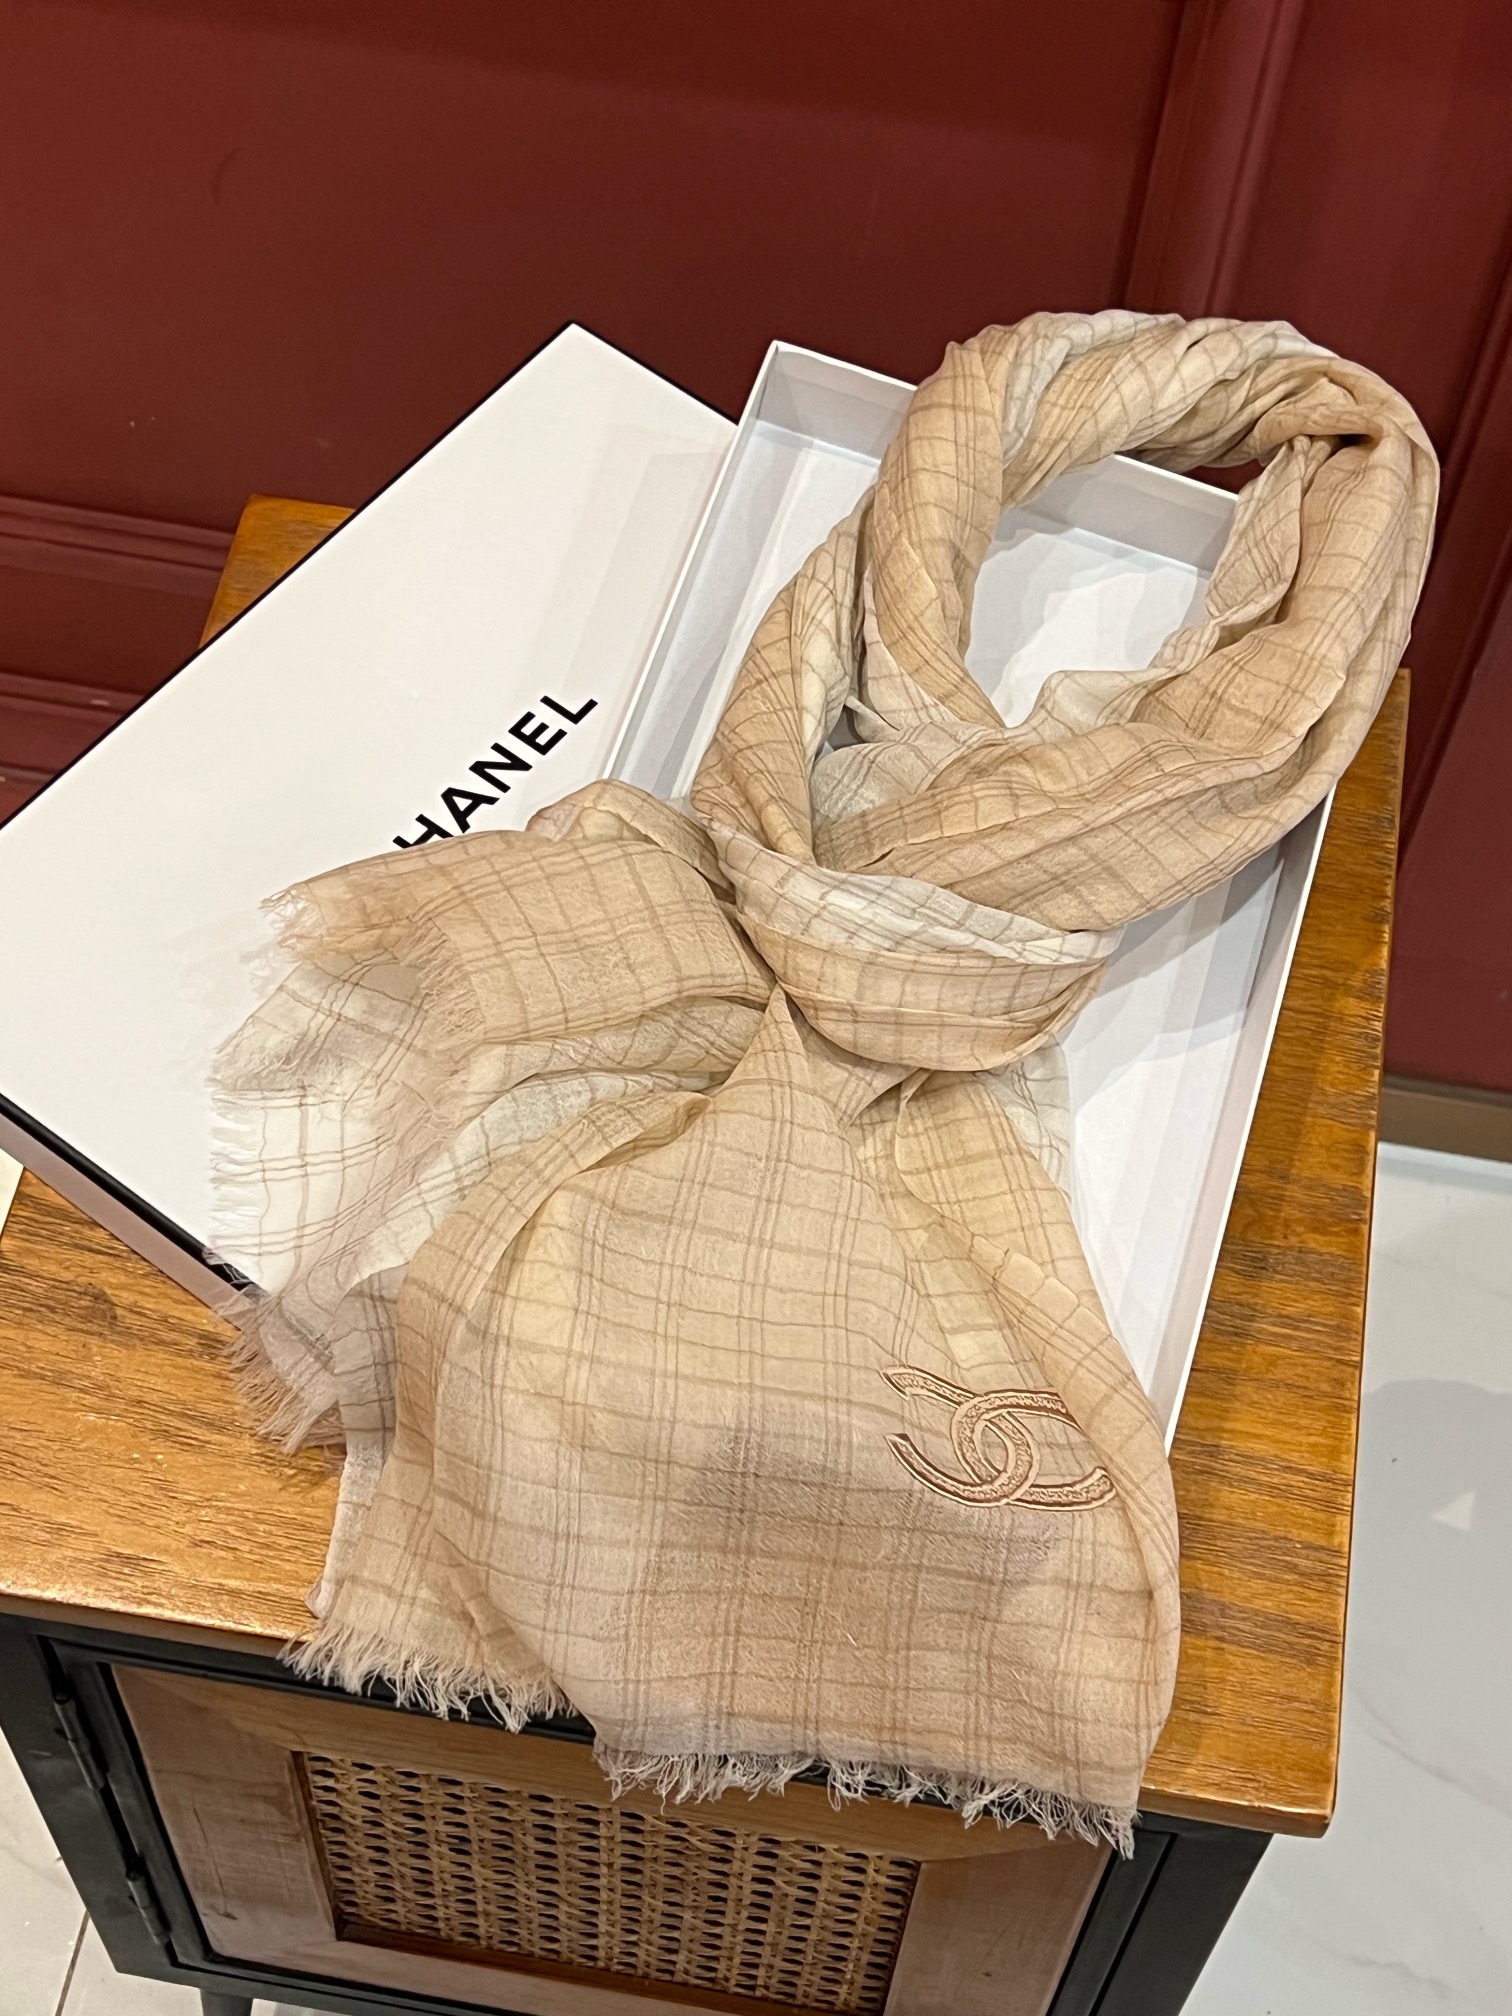 Chanel香奈儿走秀新款羊绒羊绒围巾小香简约风如今可谓风靡全球轻松表达出女性的优雅与高贵感又显复古文艺